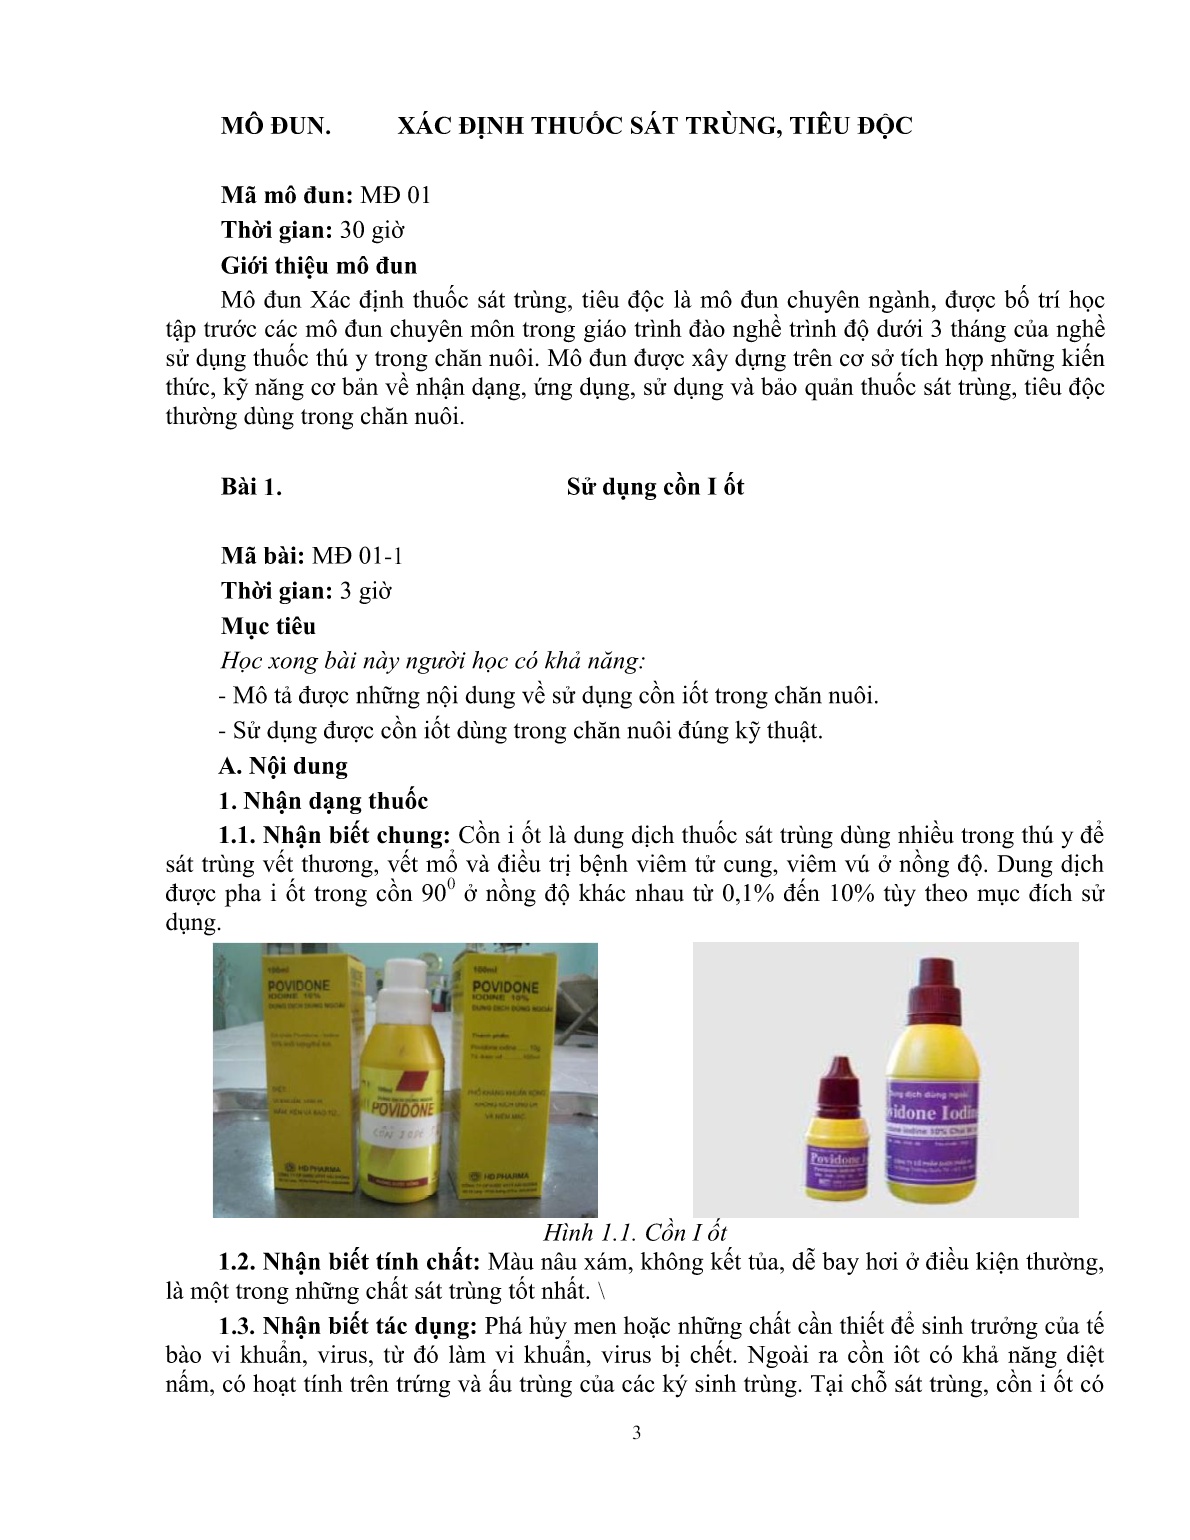 Giáo trình mô đun Xác định thuốc sát trùng, tiêu độc (Trình độ: Đào tạo dưới 03 tháng) trang 4